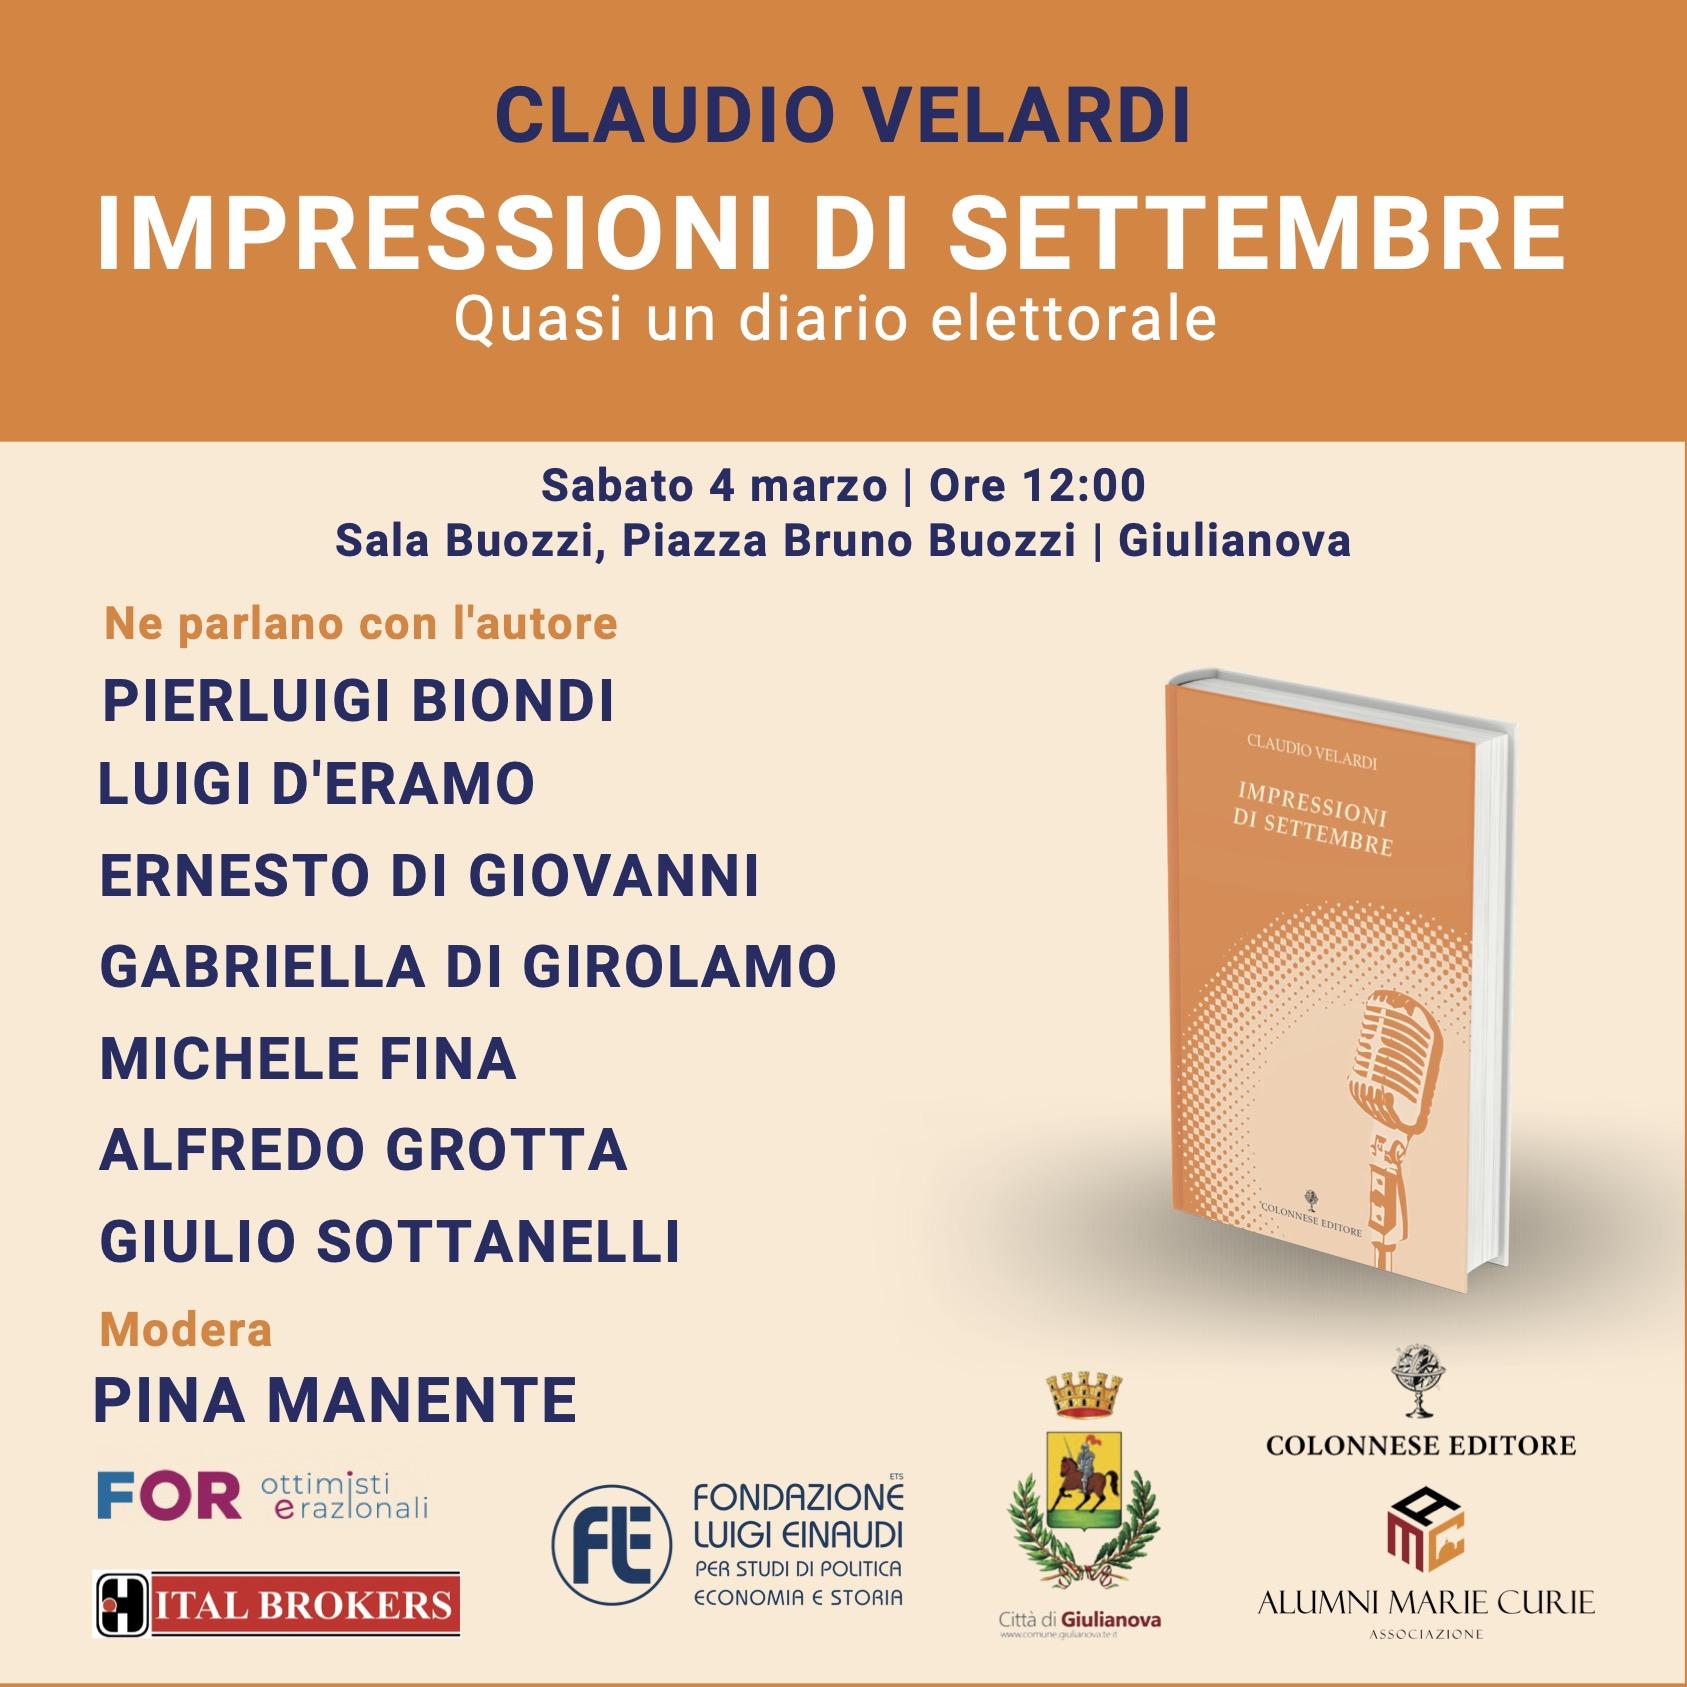 Presentazione del libro “Impressioni di settembre” di Claudio Velardi